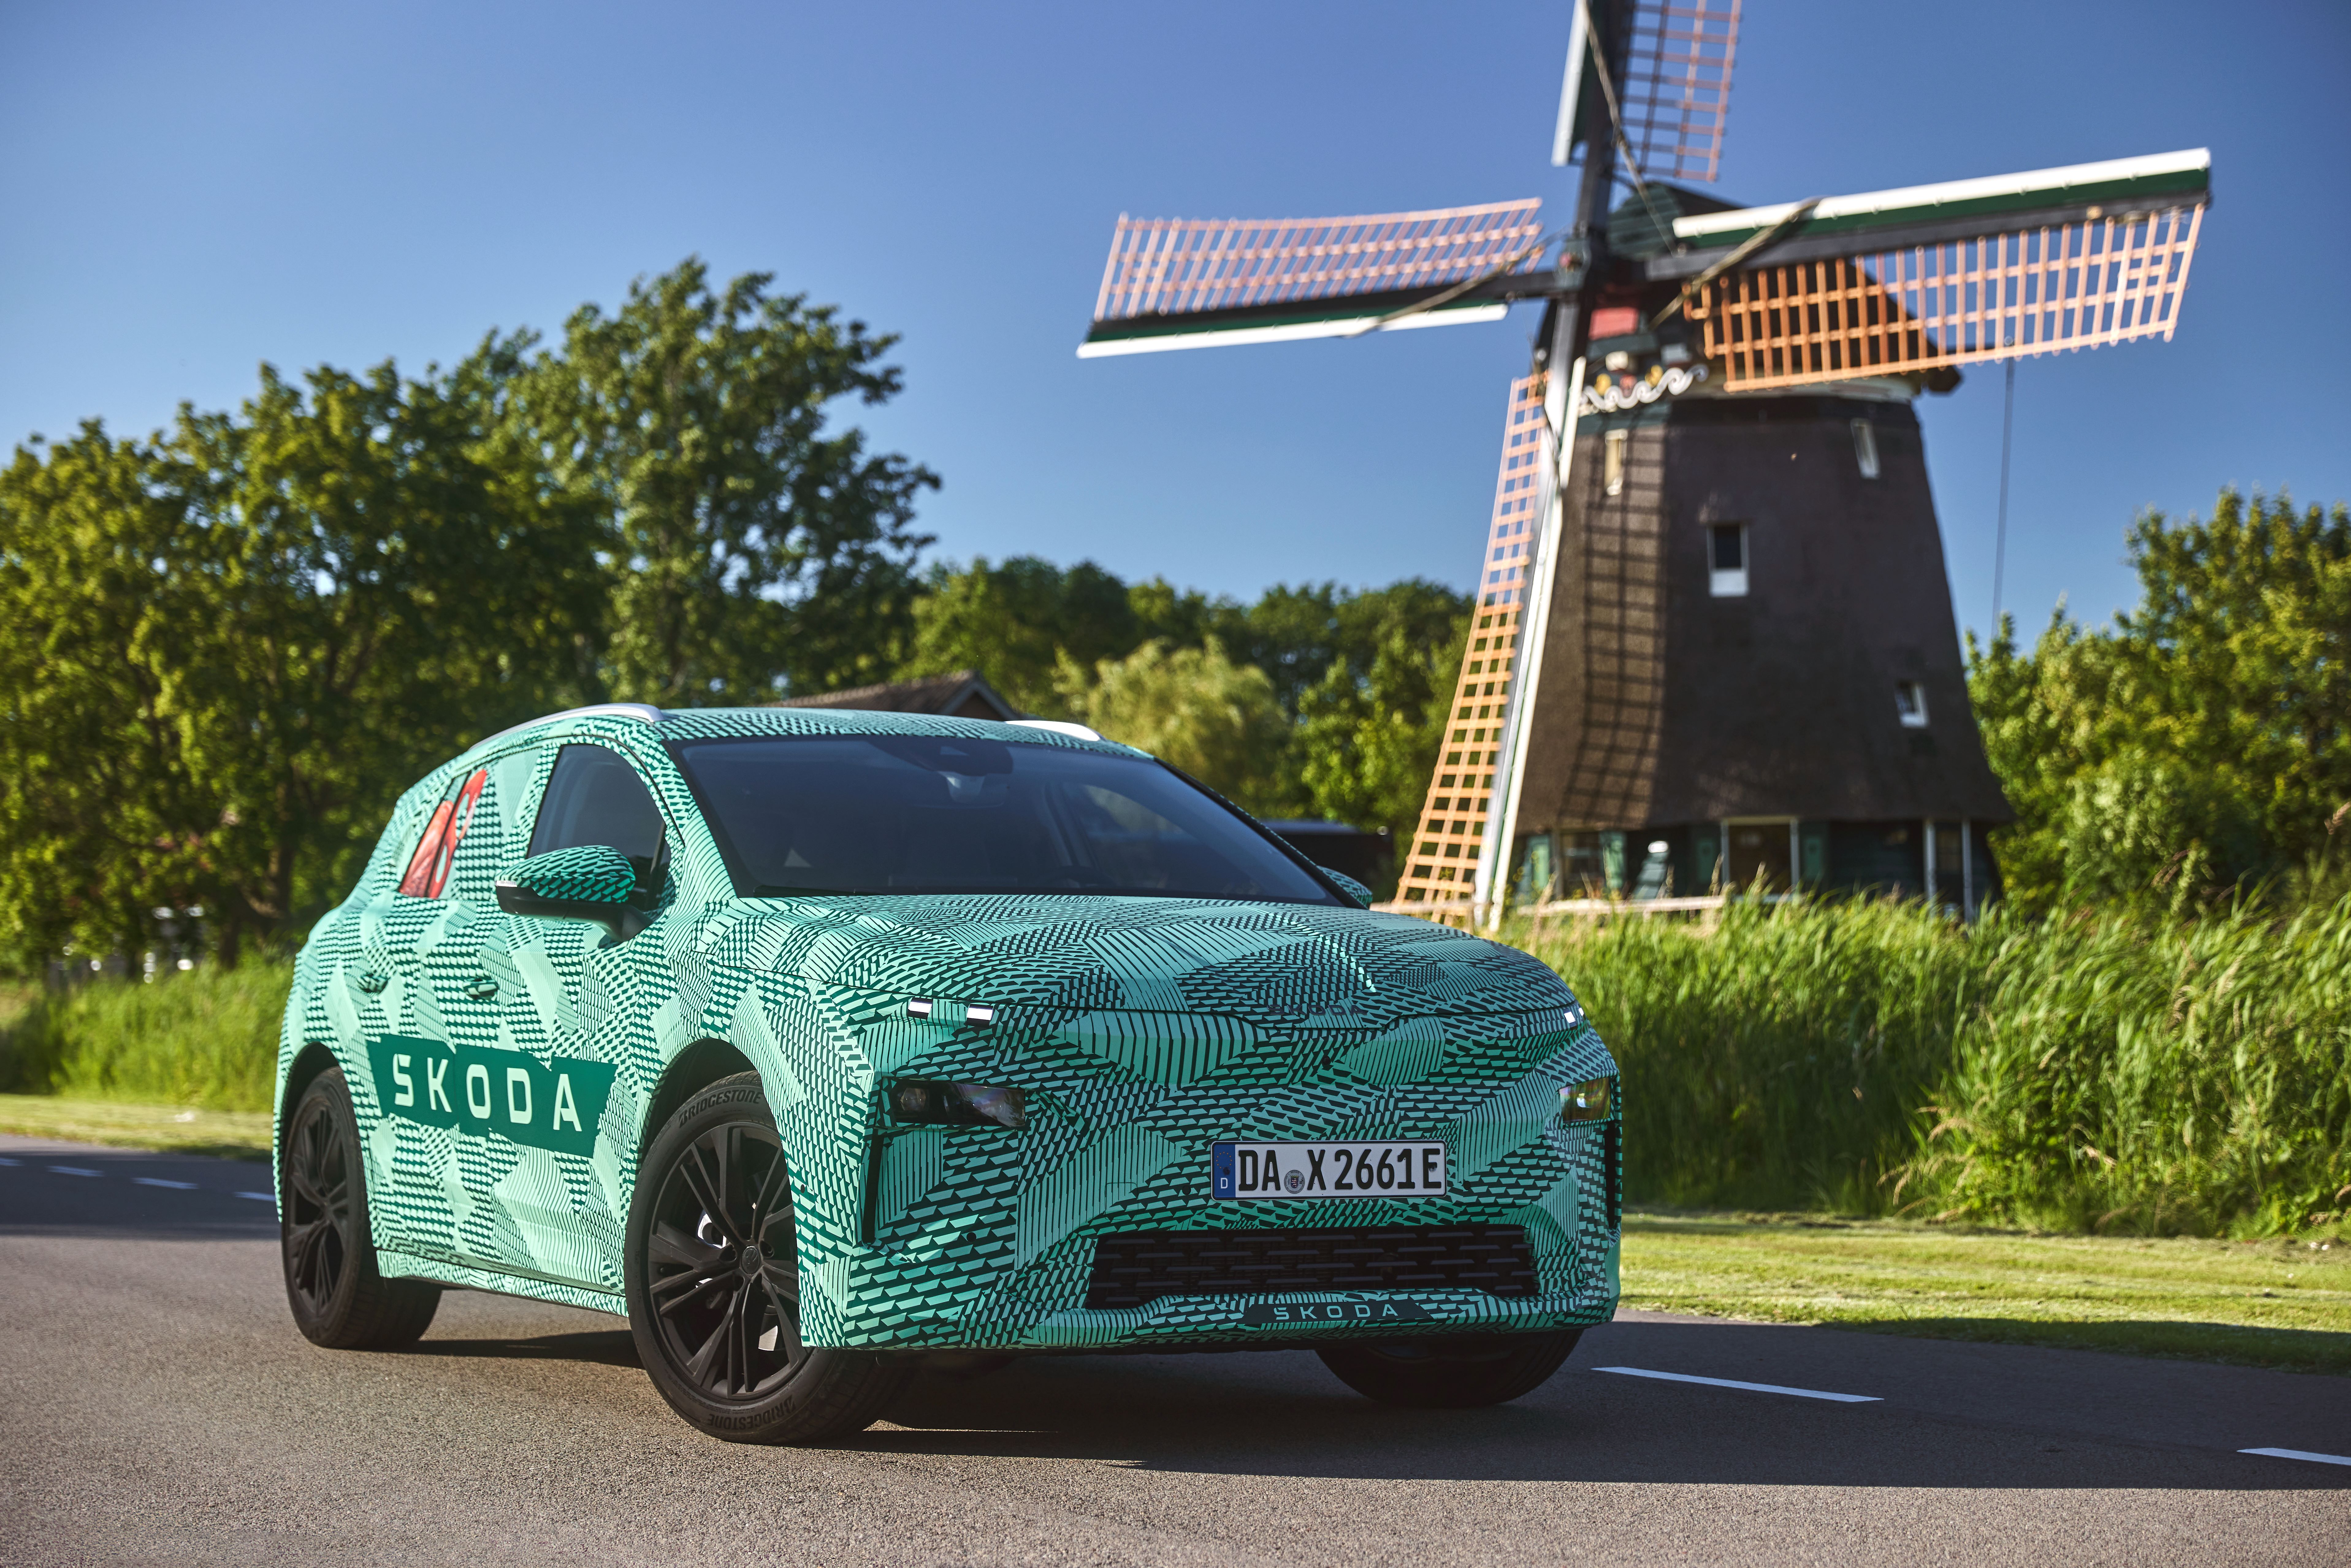 Nu gör Škodas nästa helelektriska modell Elroq sin förtäckta debut